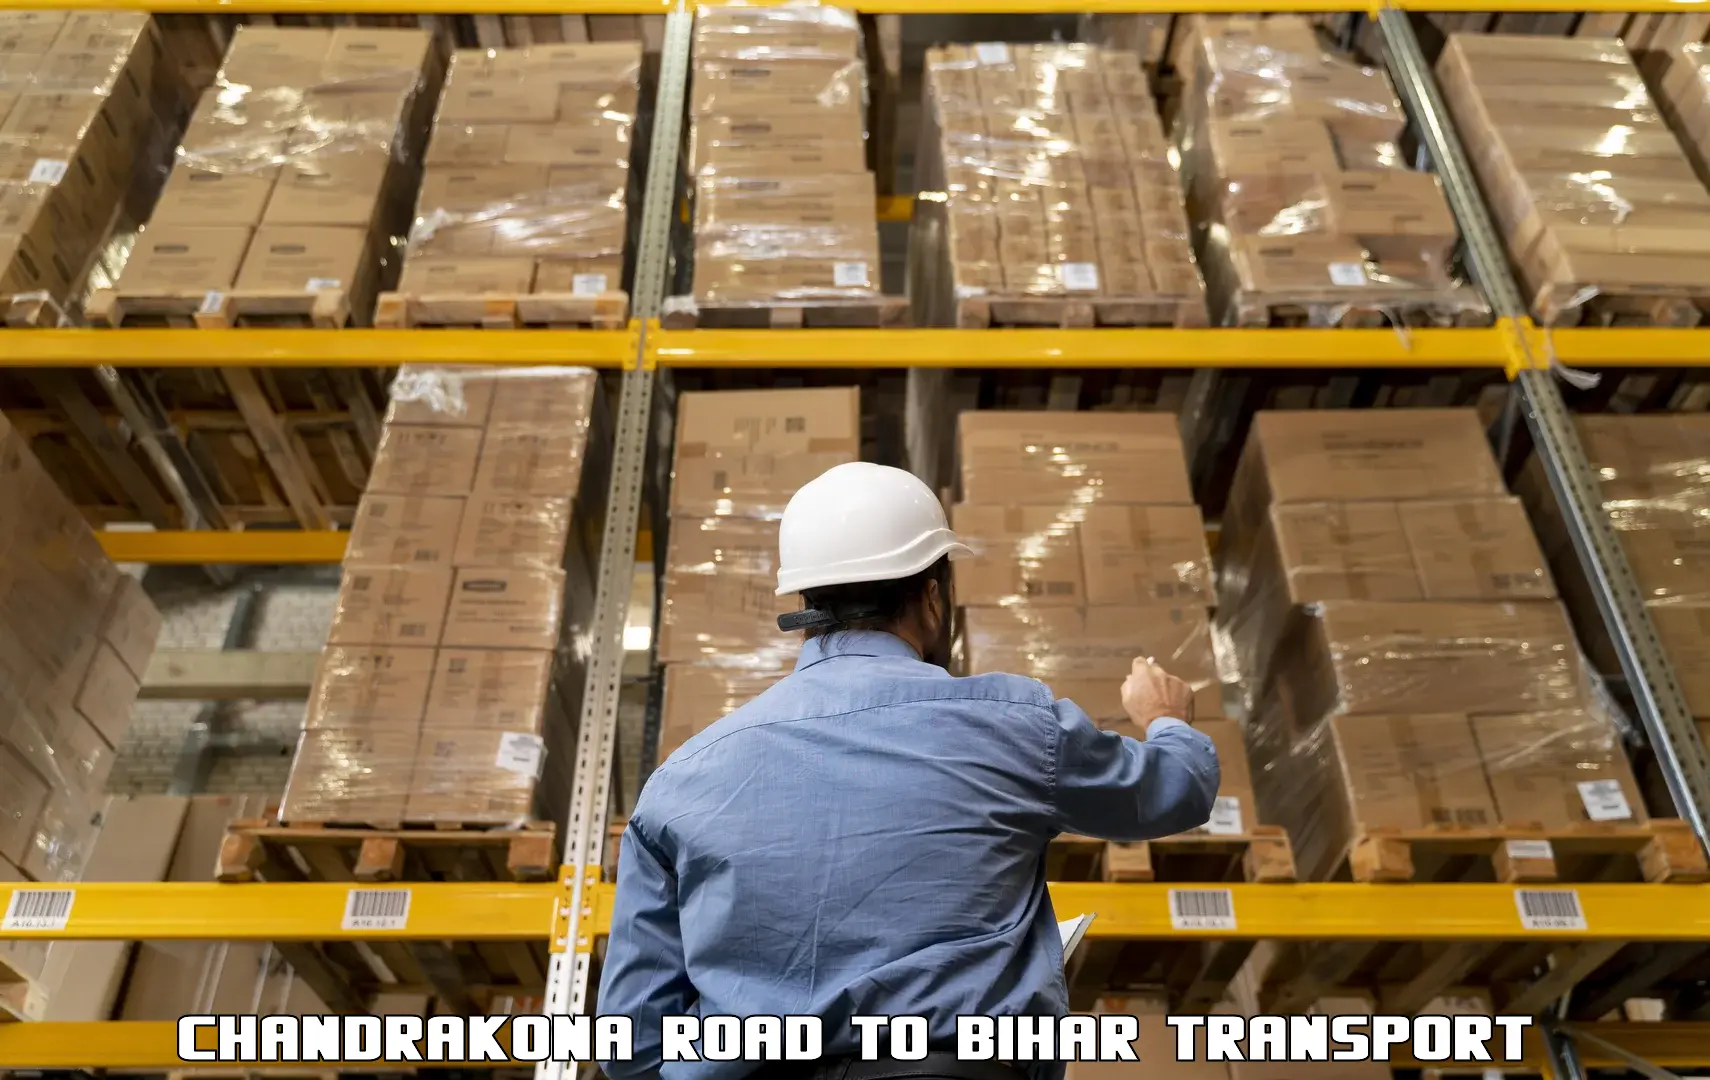 Part load transport service in India Chandrakona Road to Madhepura